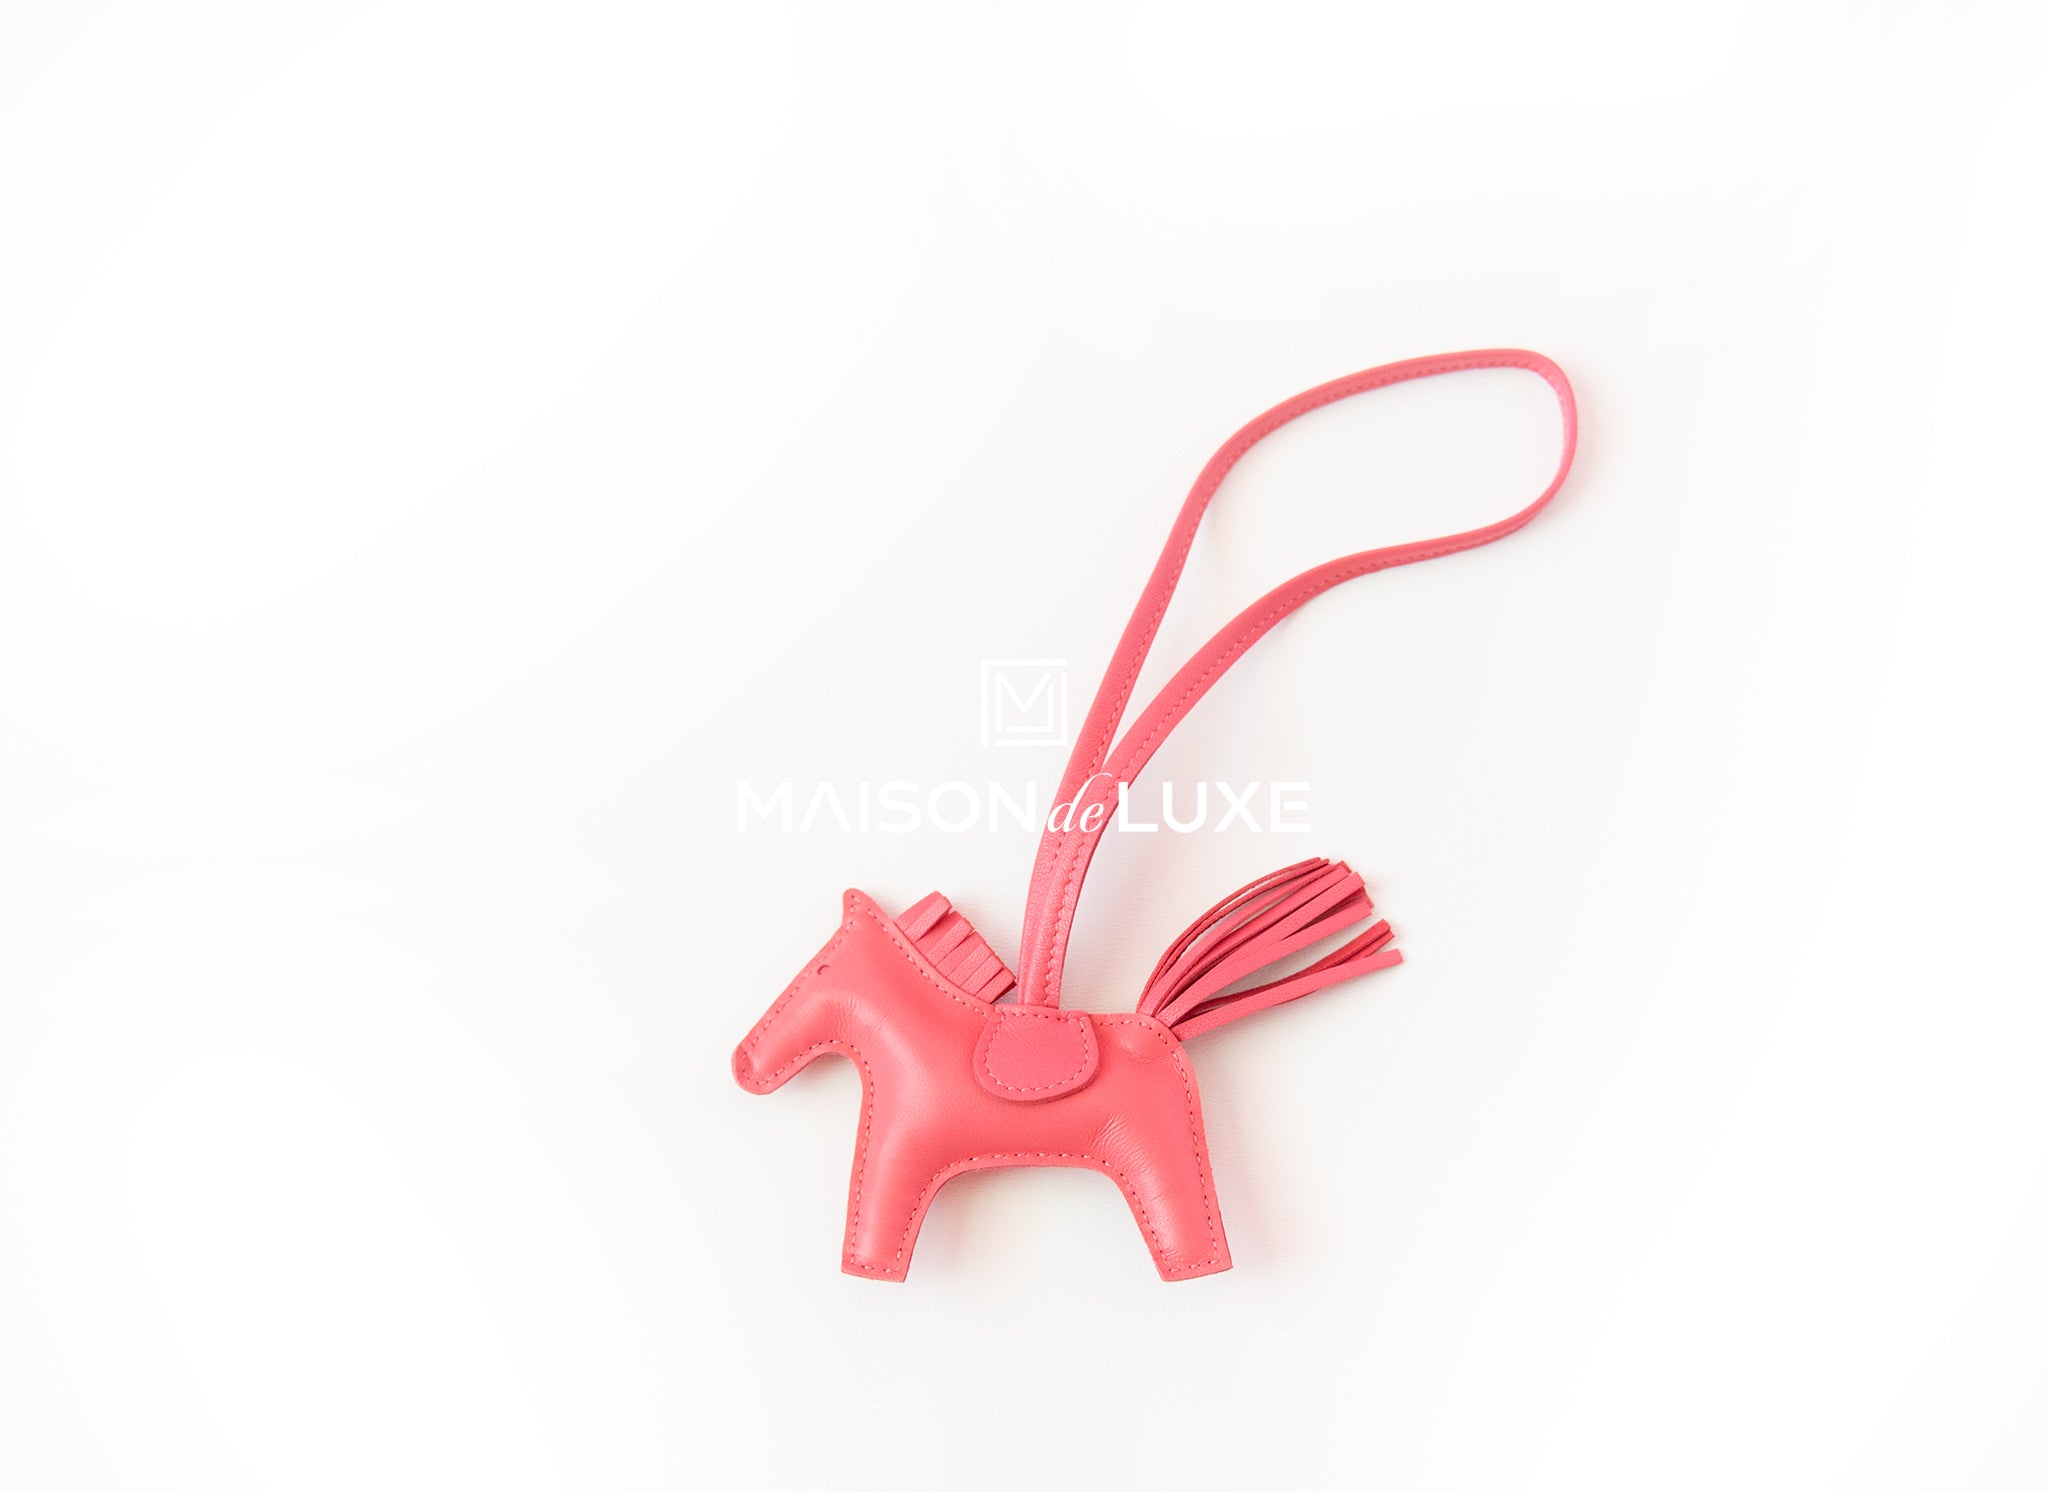 Hermes Rose Mexico Grigri Rodeo Horse Bag Charm Key Chain Carmen – MAISON  de LUXE